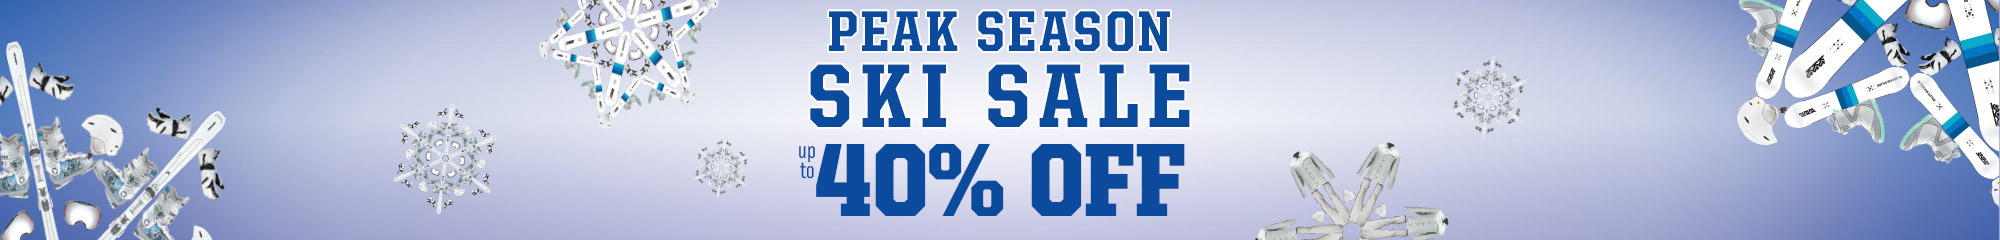 Peak Season Ski Sale - Up to 40% Off